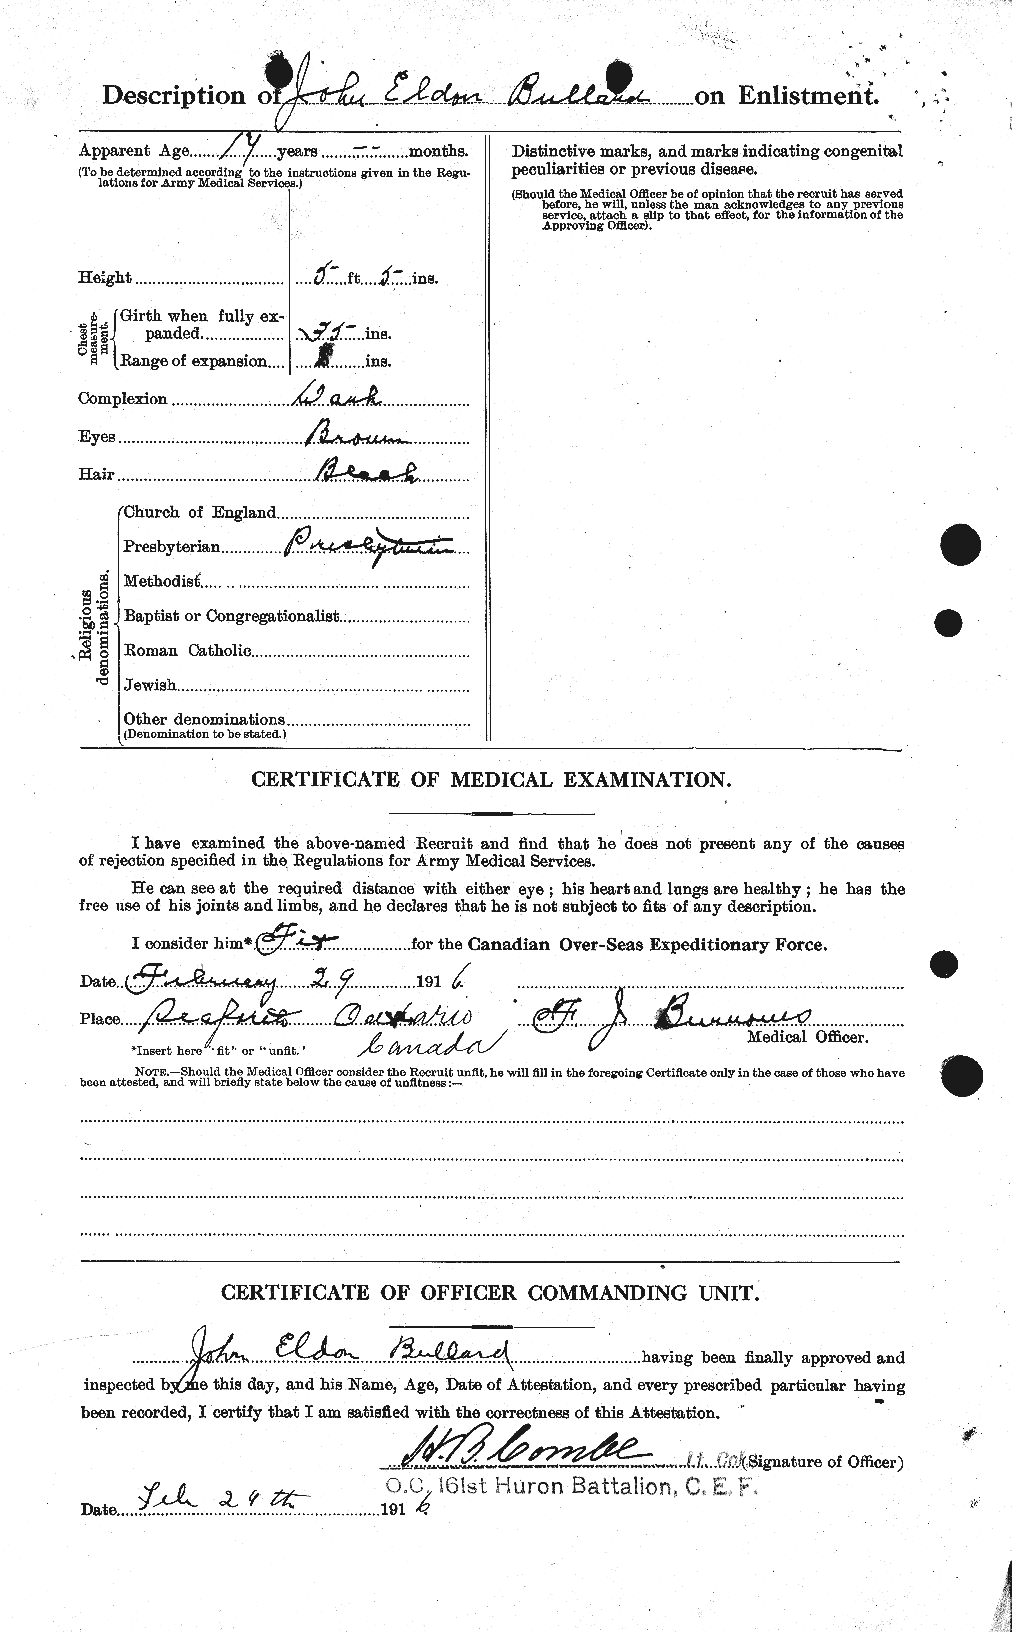 Dossiers du Personnel de la Première Guerre mondiale - CEC 273469b